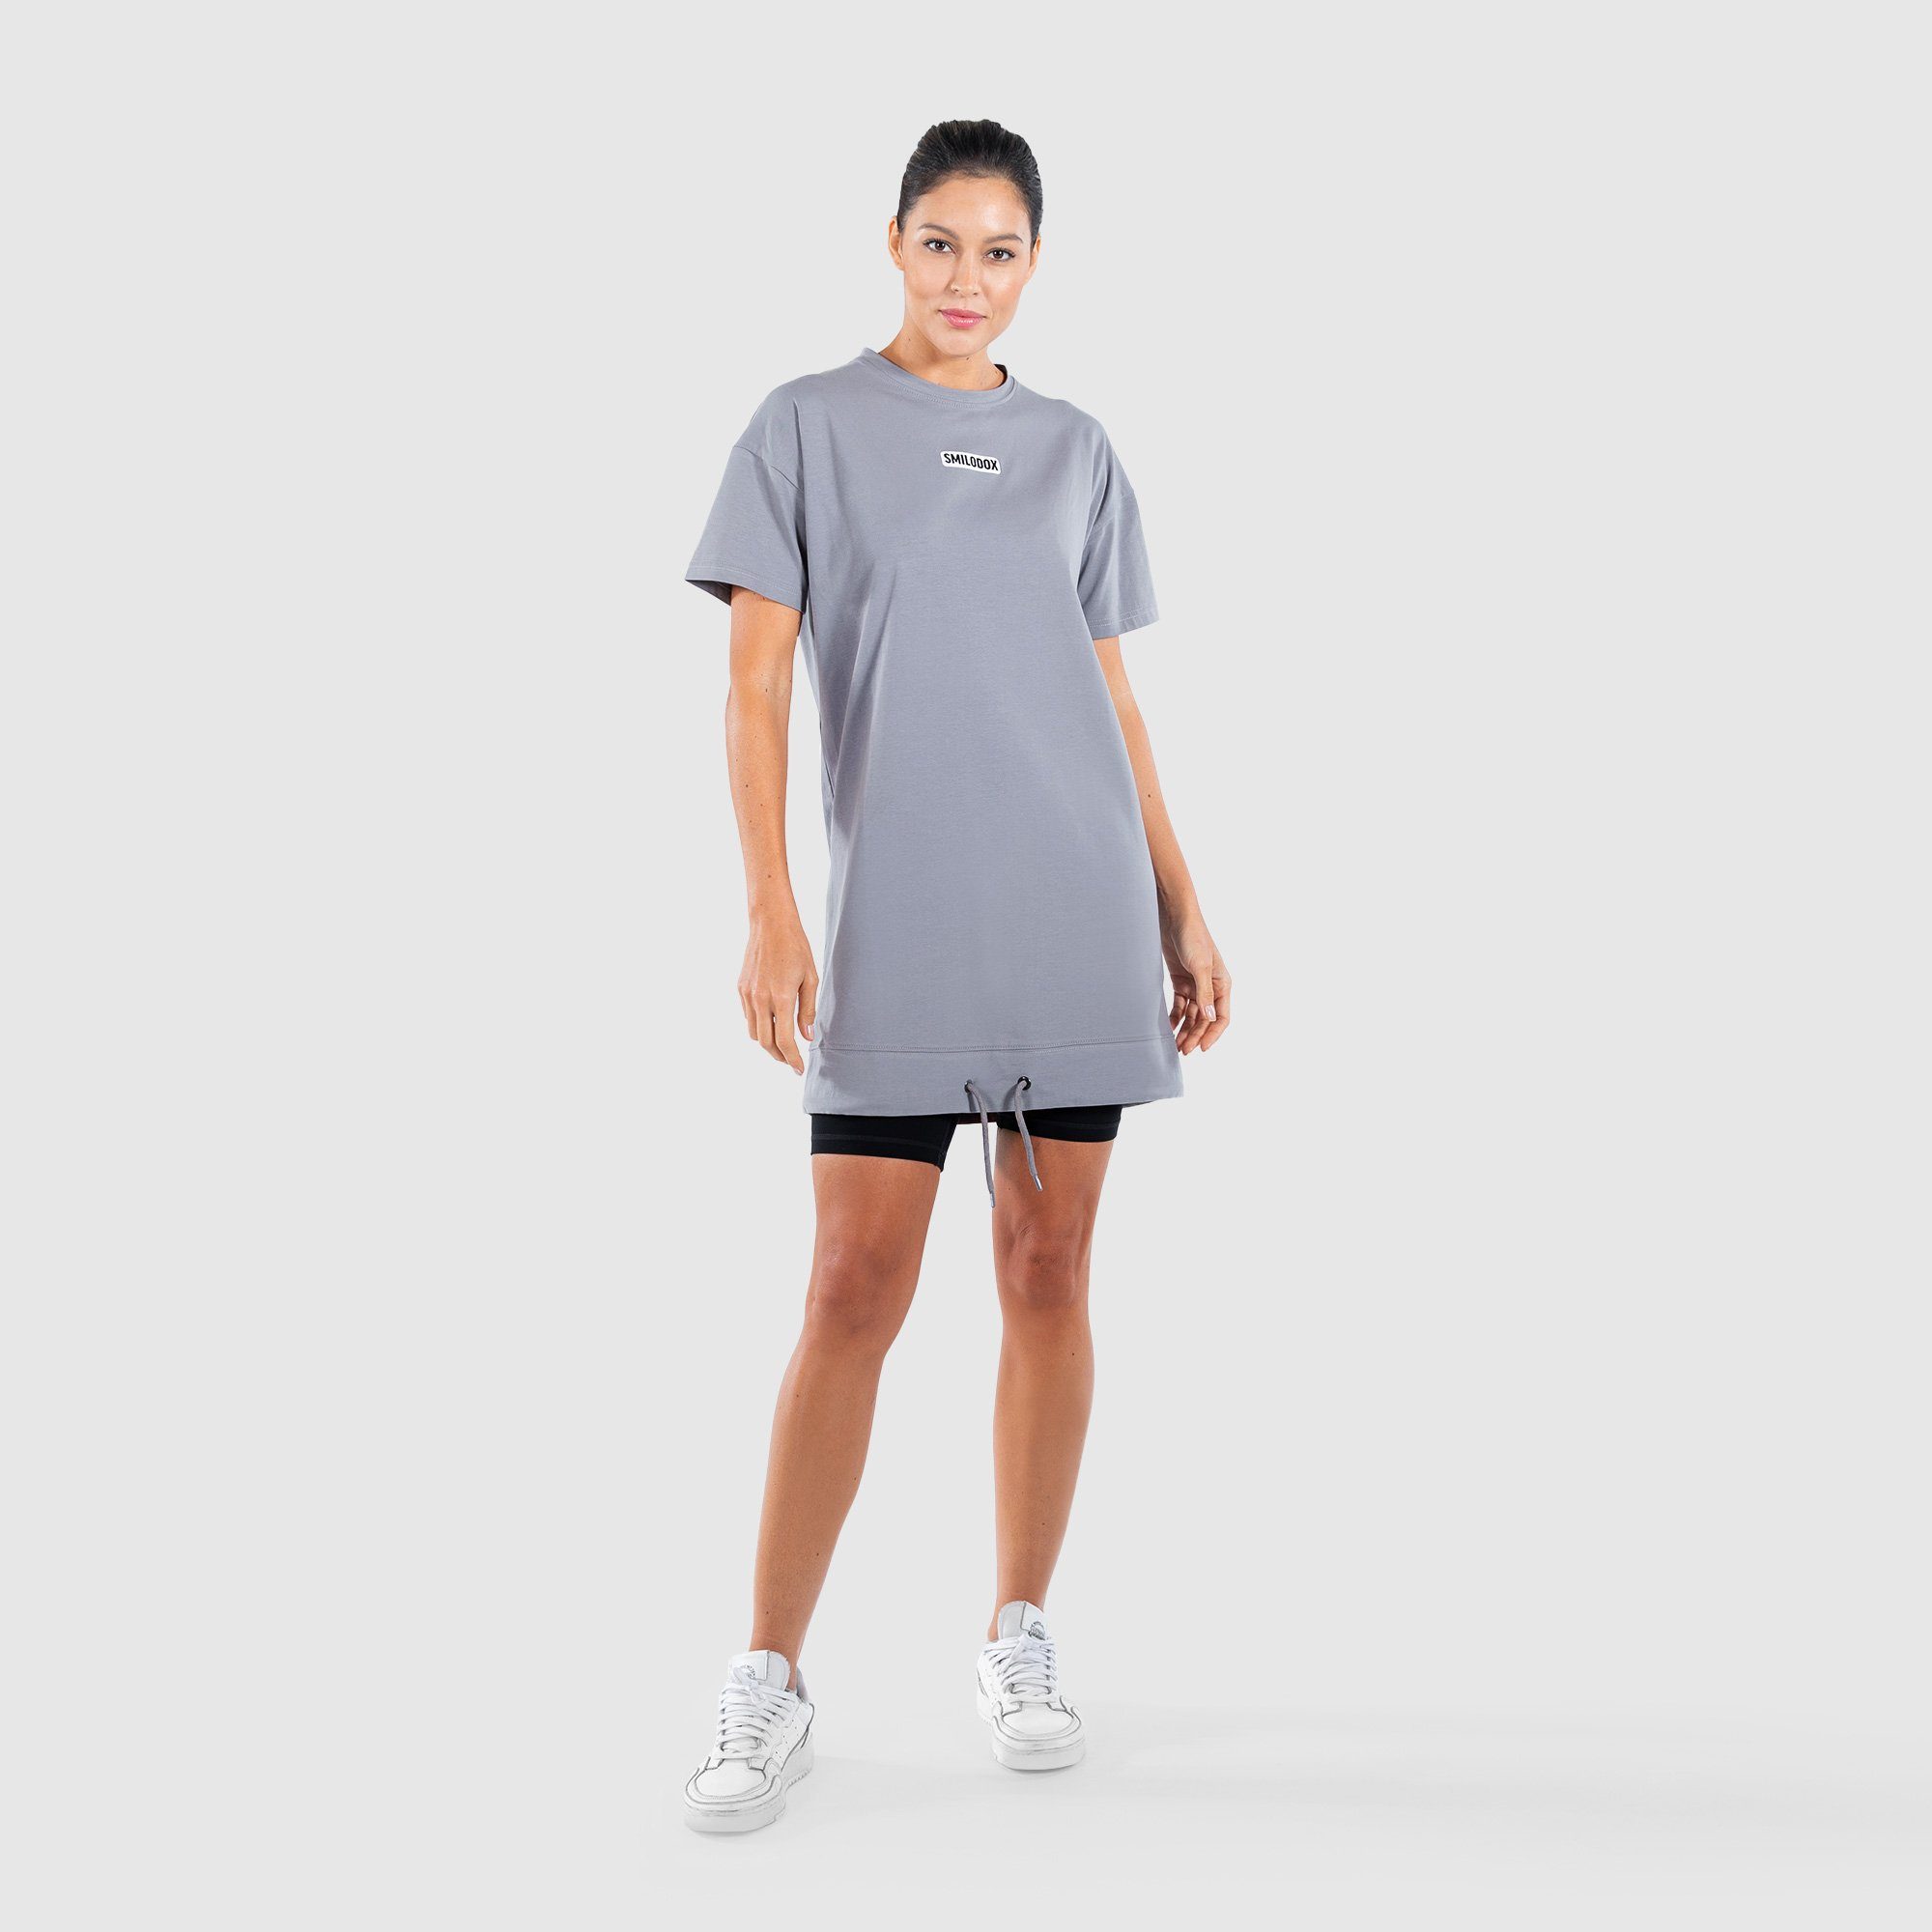 Smilodox T-Shirt Brisk Grau